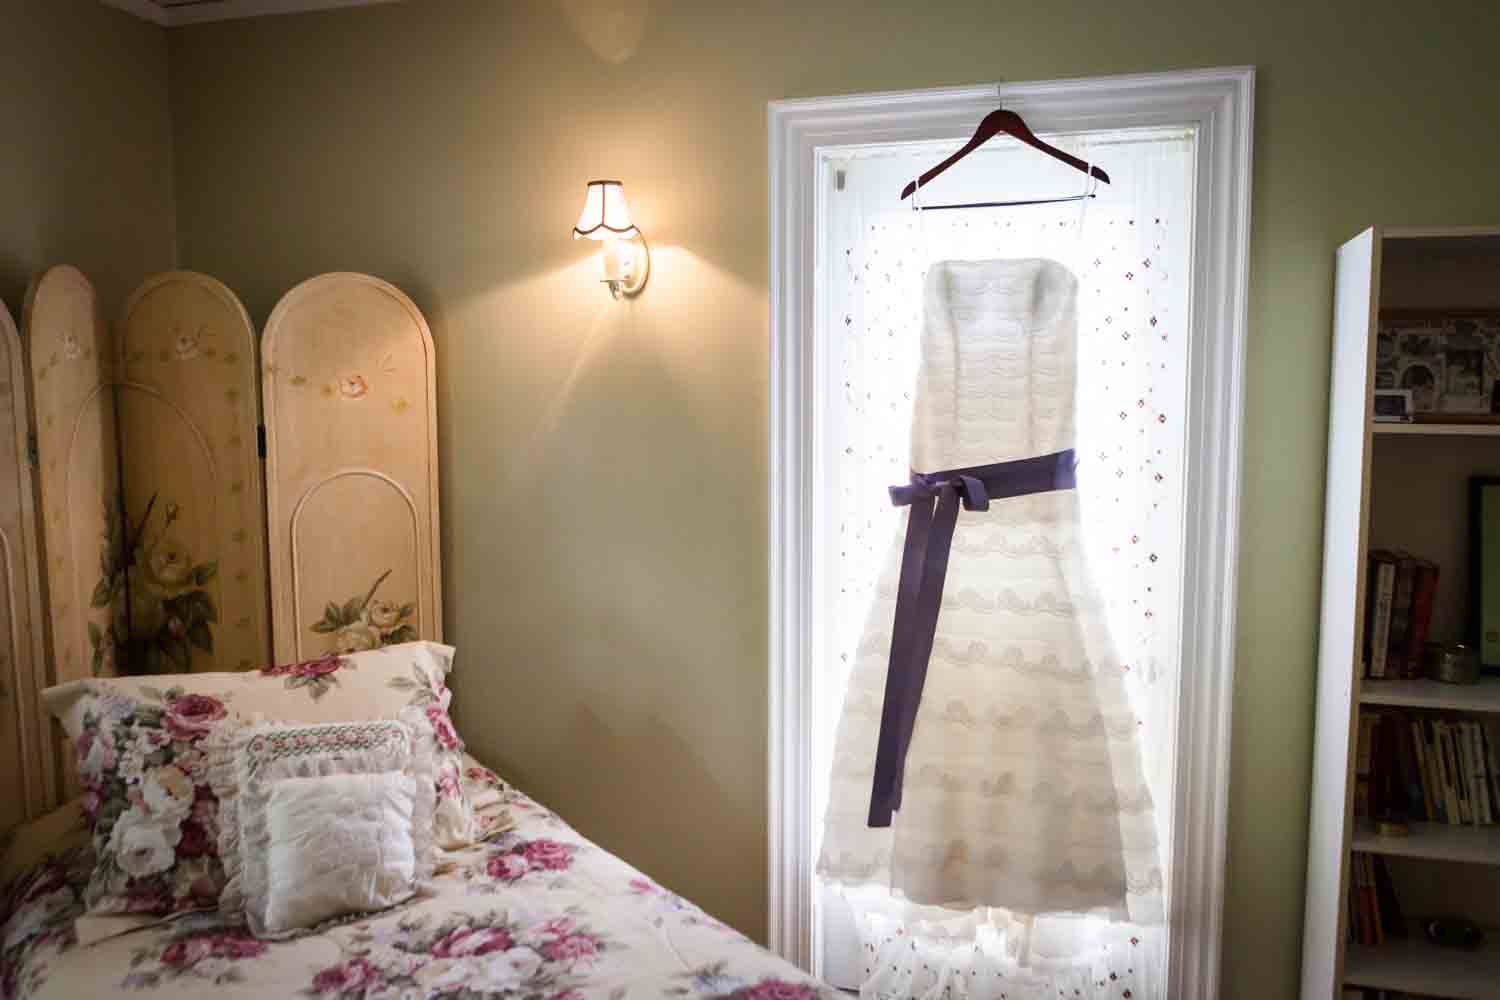 Wedding dress hanging in window of bedroom